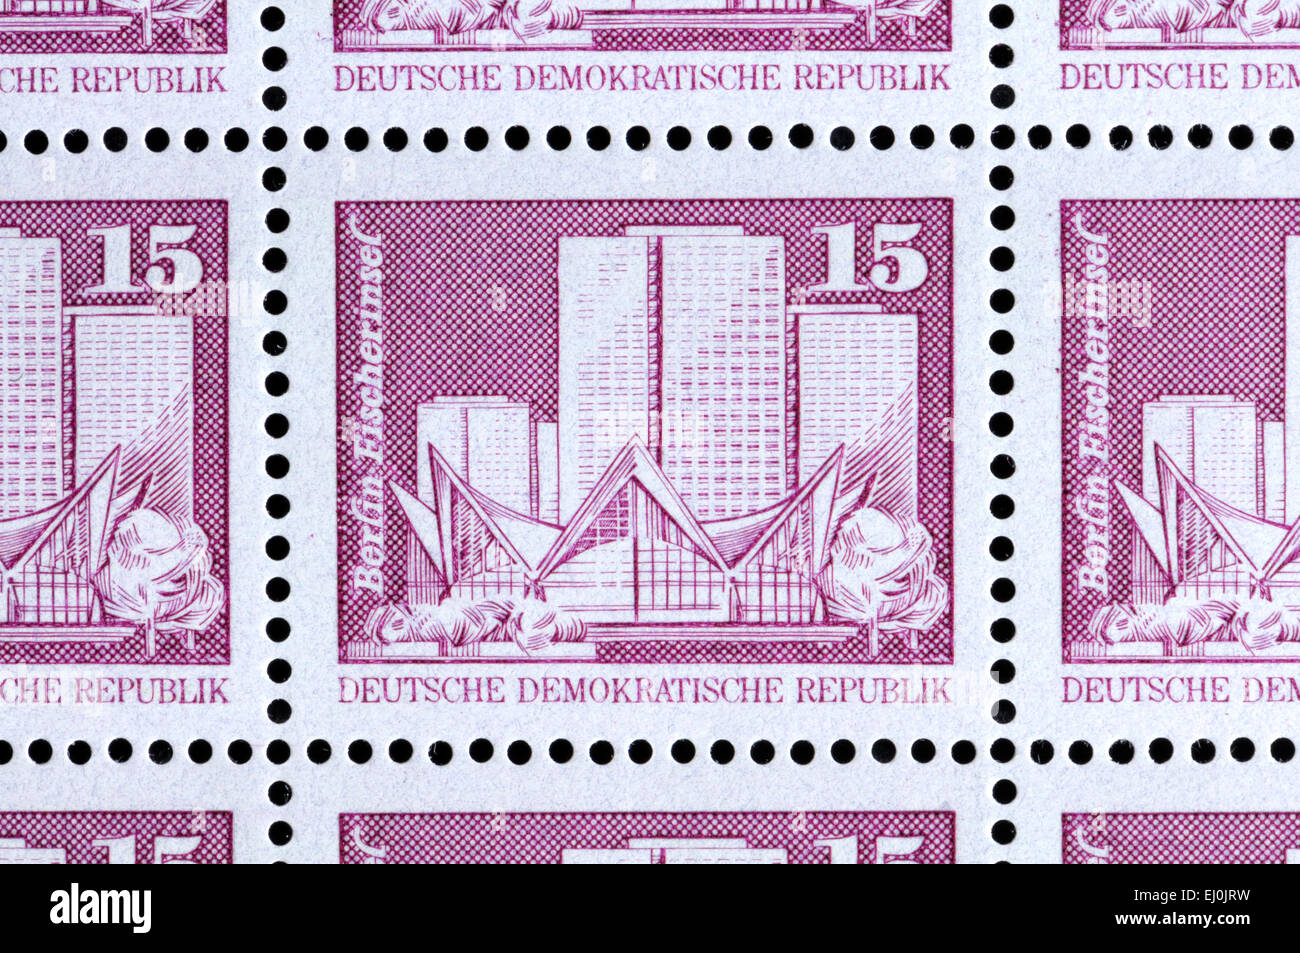 15pf francobolli da DDR comunista ' Germania Est mostra Fischerinsel (Fisherman's island), Berlino Foto Stock